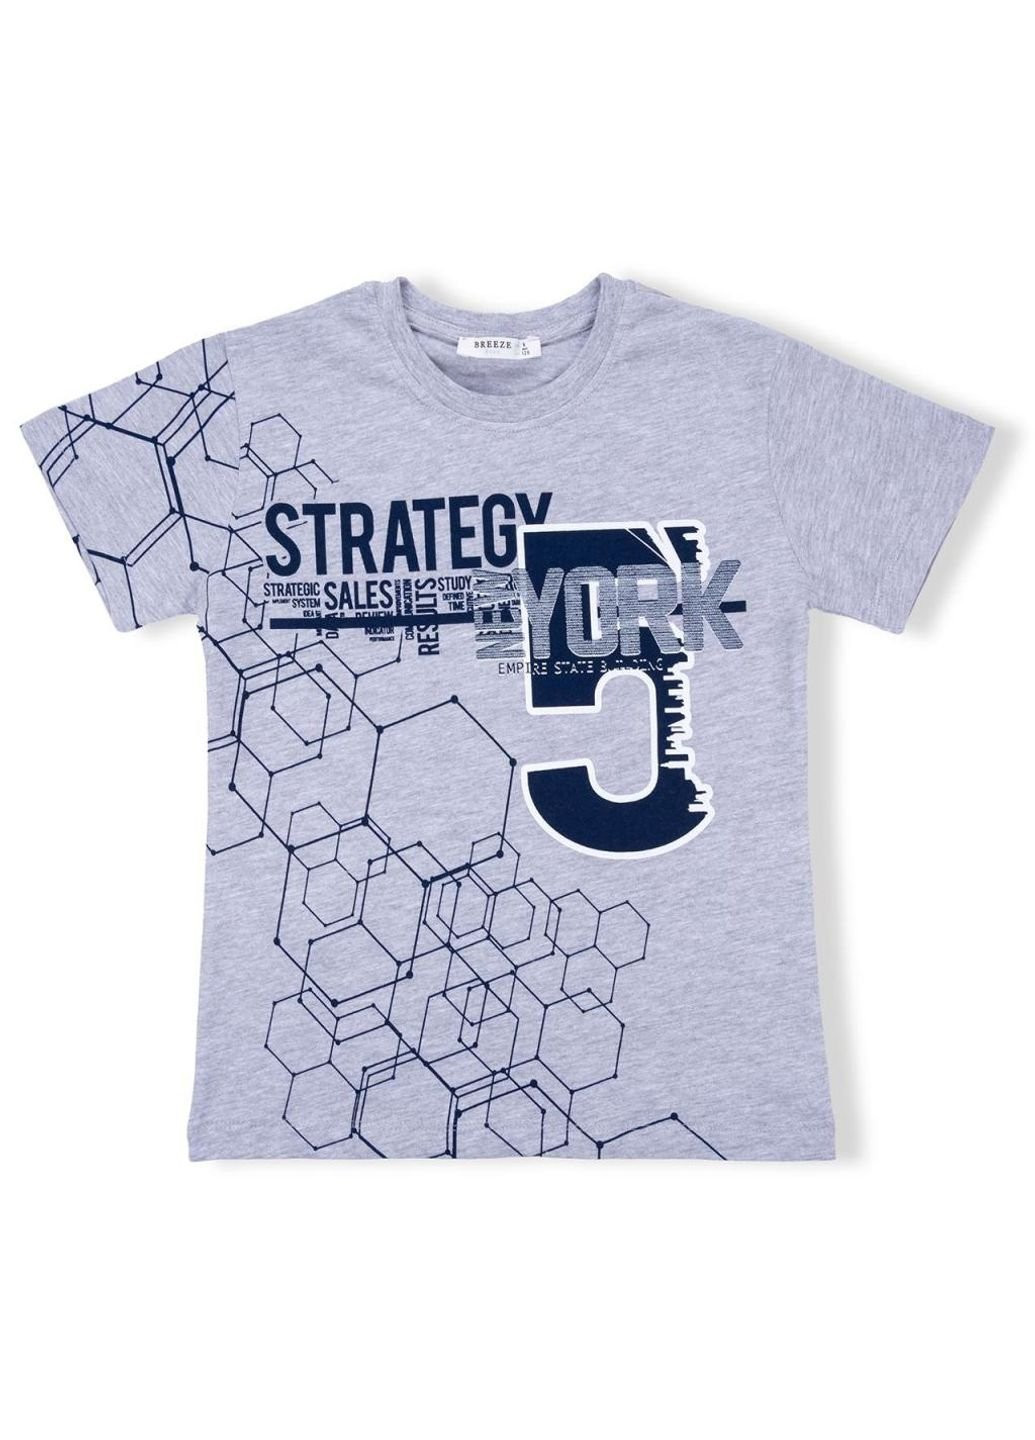 Сіра демісезонна футболка дитяча "strategy" (10152-134b-gray) Breeze